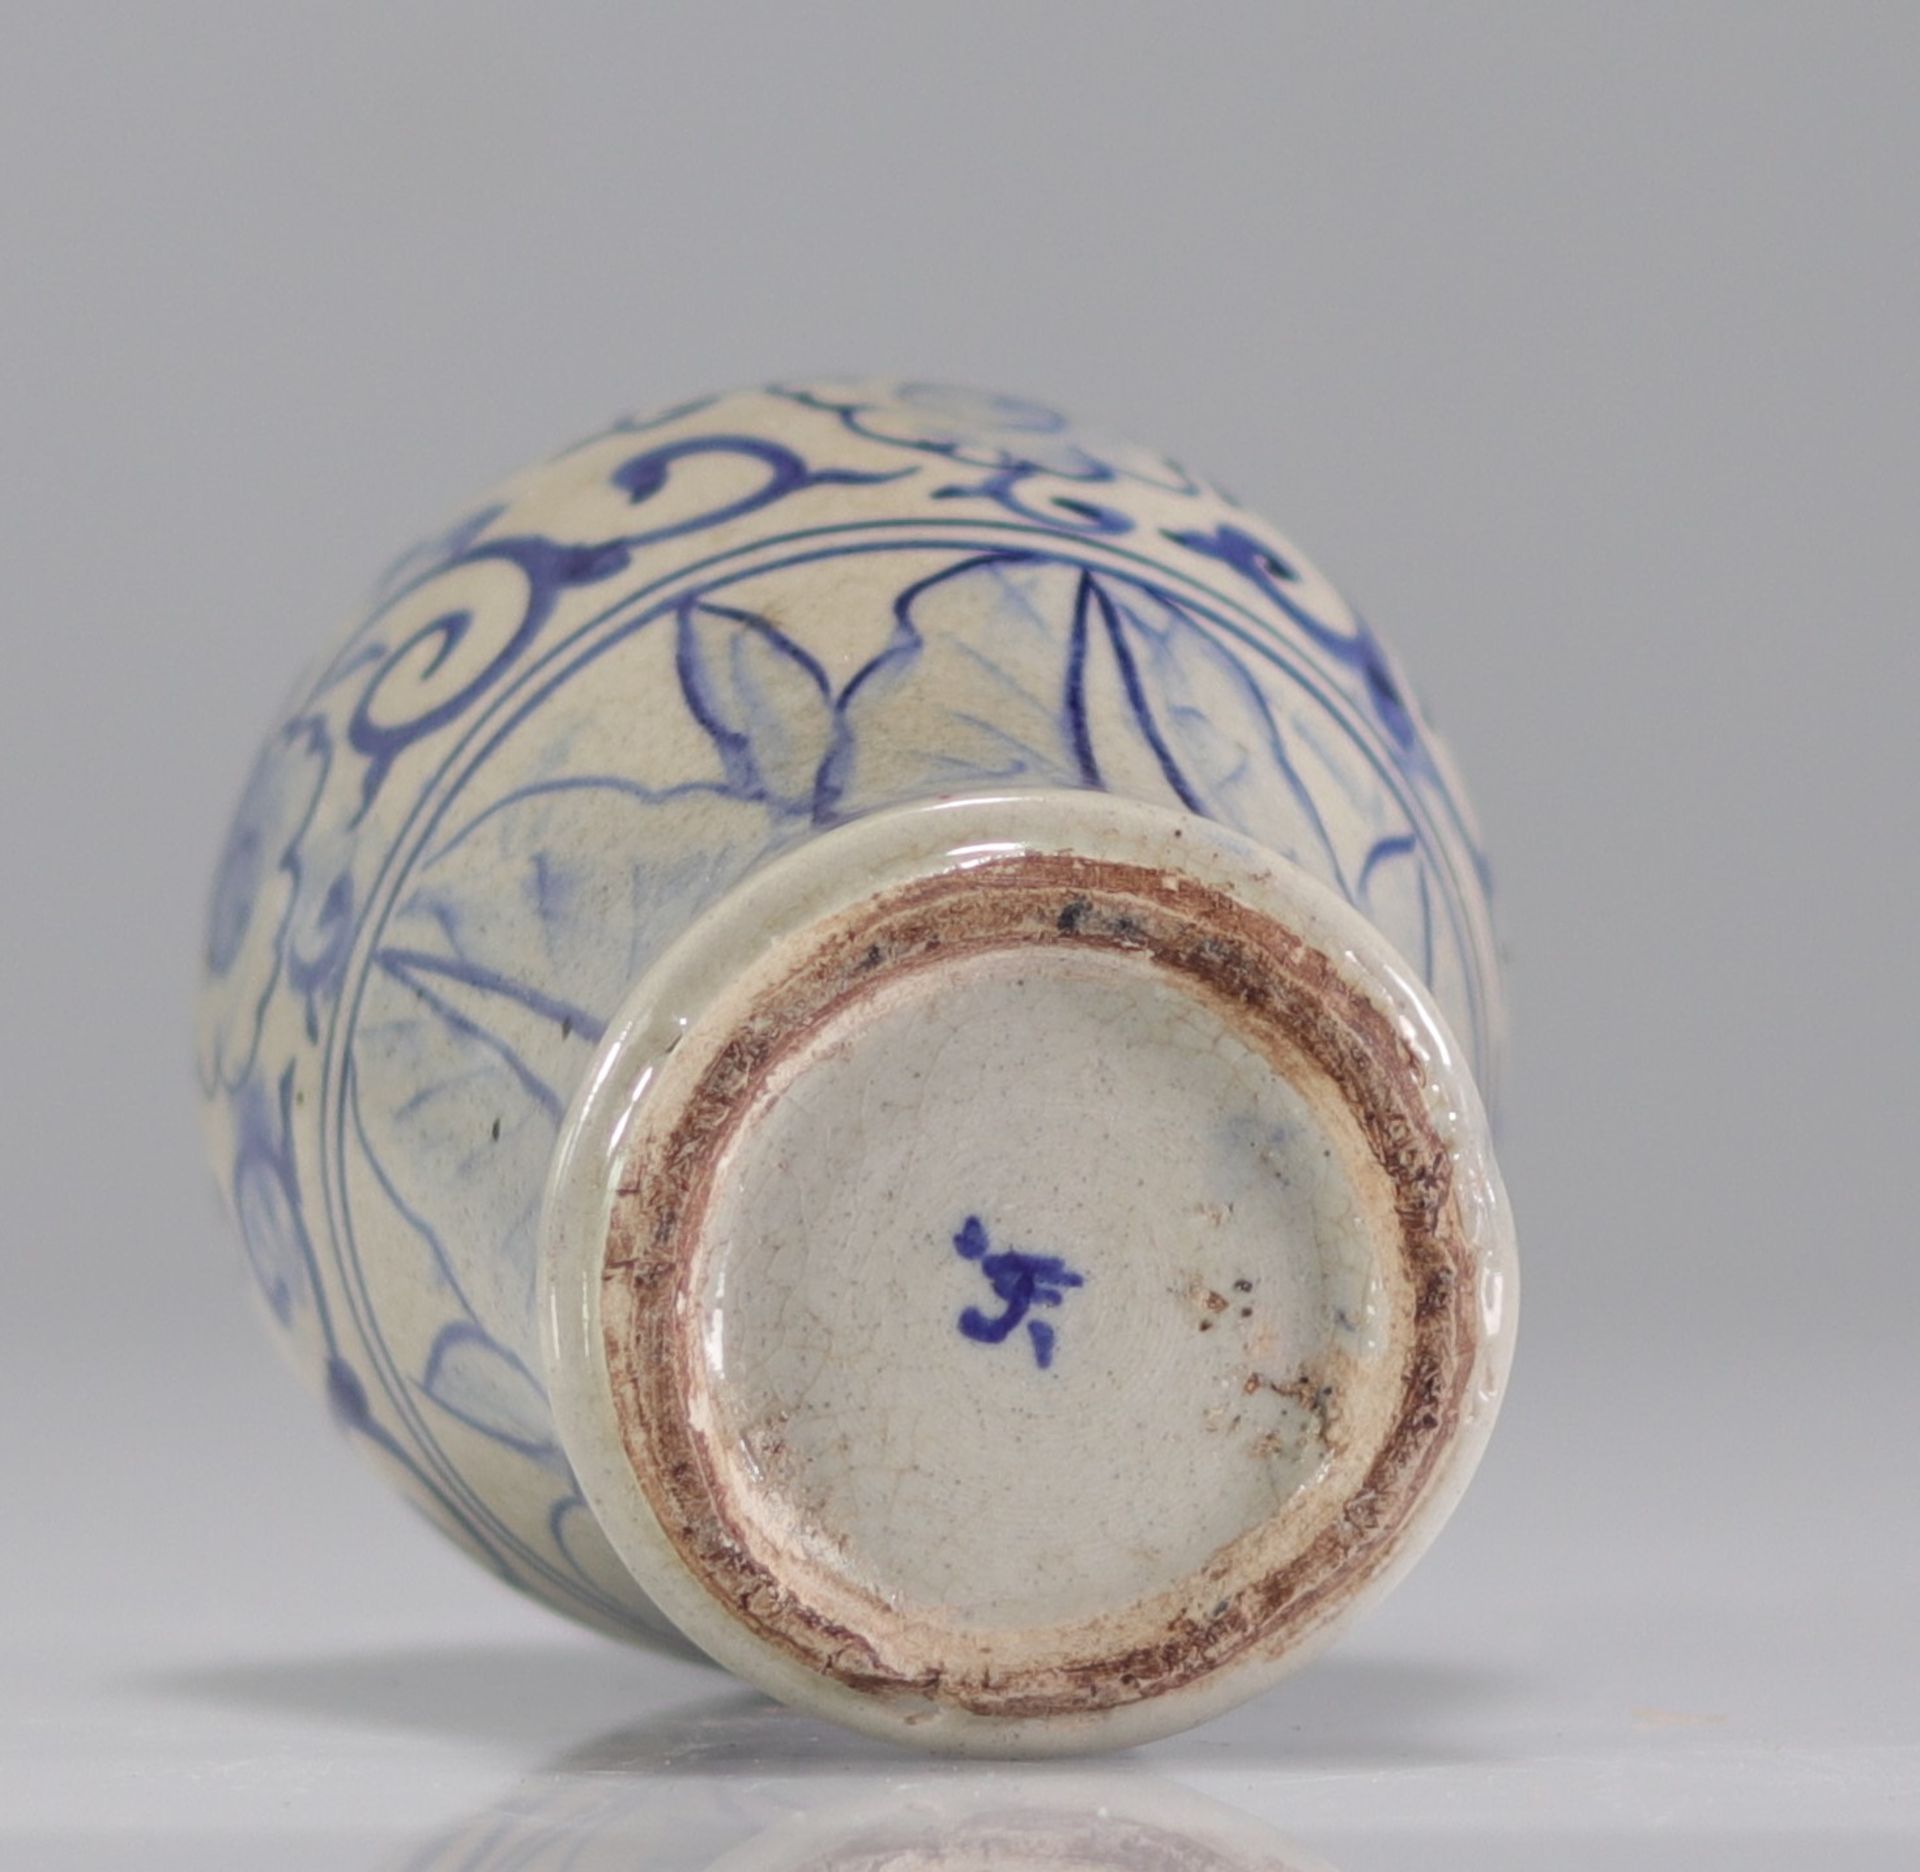 China glazed sandstone vase - Image 3 of 3